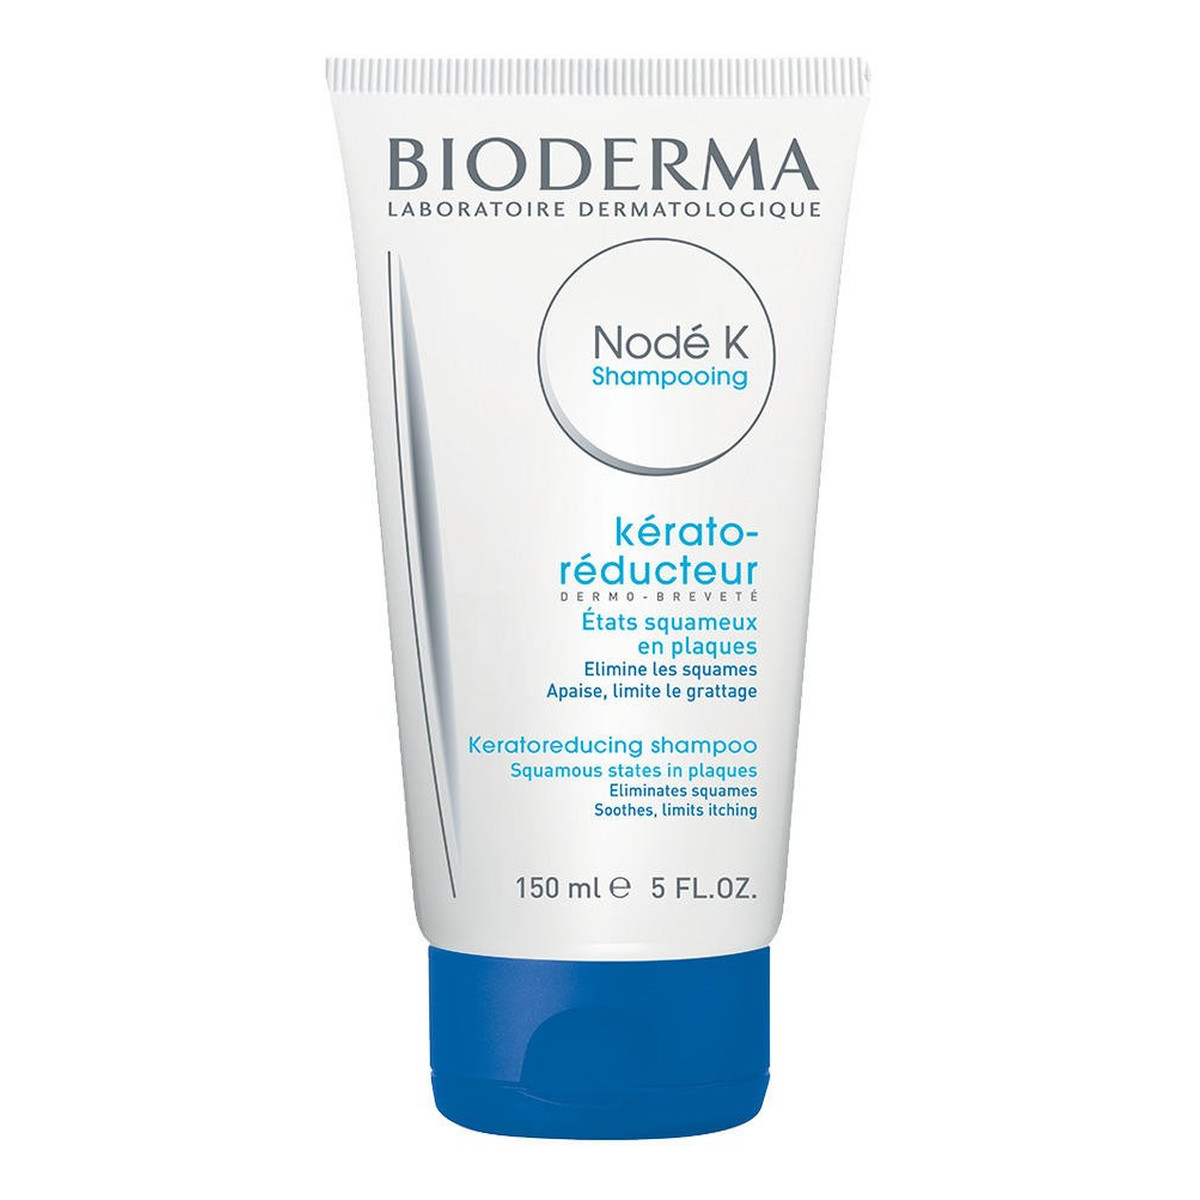 Bioderma Node k shampooing szampon przeciwłupieżowy o działaniu złuszczającym przeciwzapalnym i przeciwświądowym 150ml